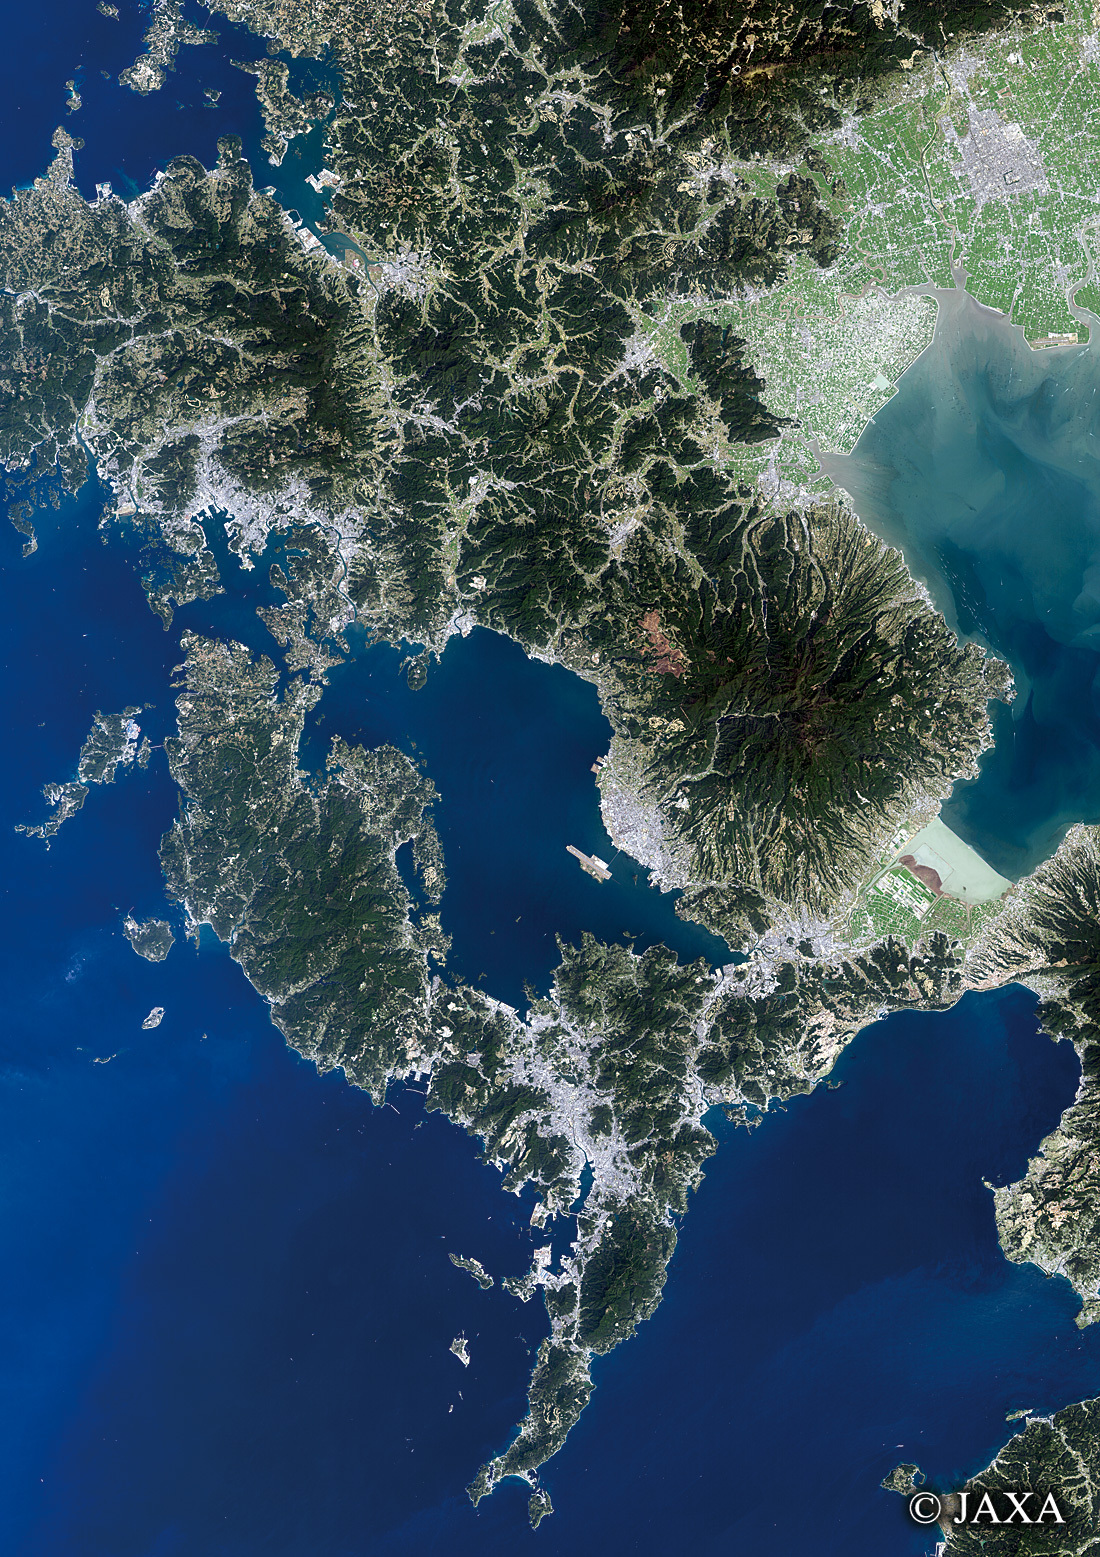 だいちから見た日本の都市 長崎県:衛星画像